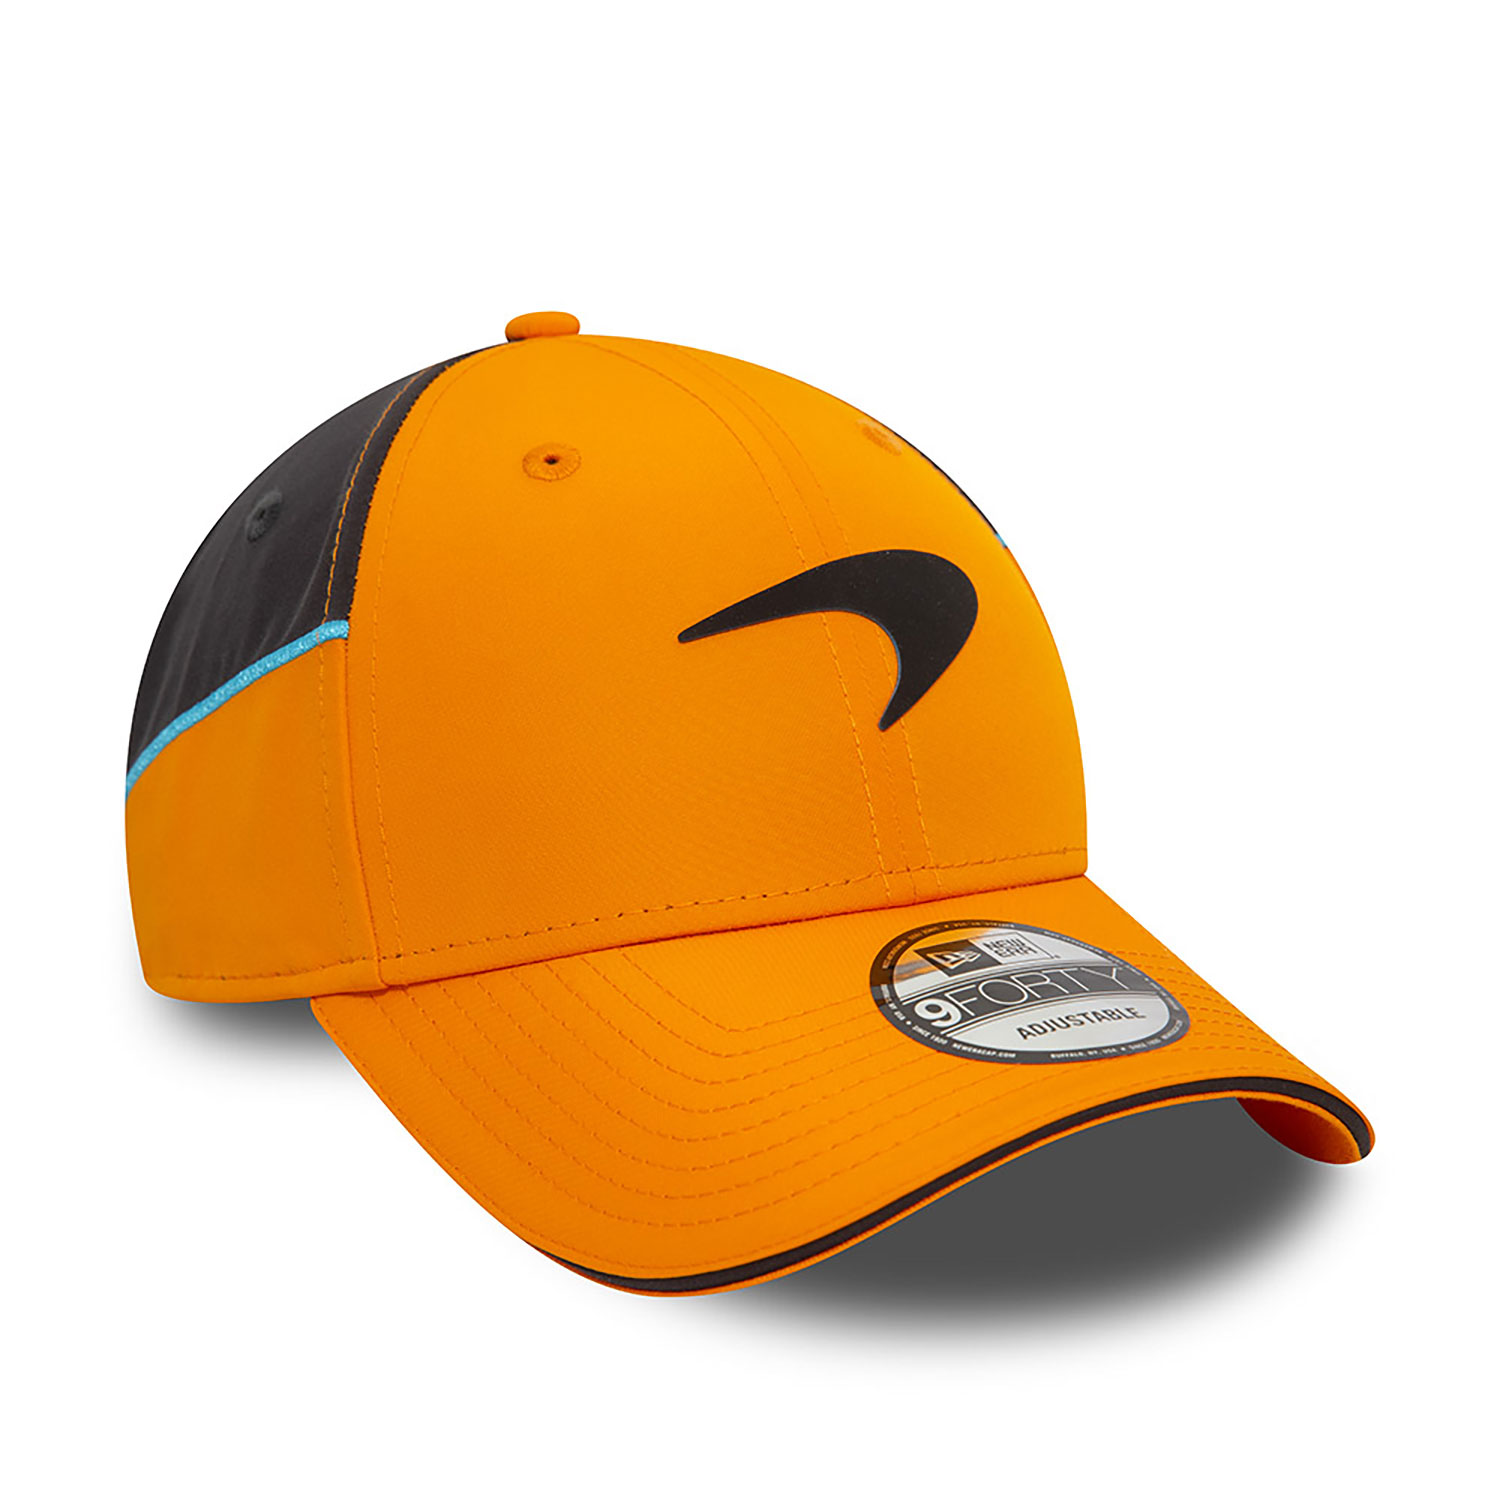 McLaren Racing Team Colour Orange 9FORTY Adjustable Cap